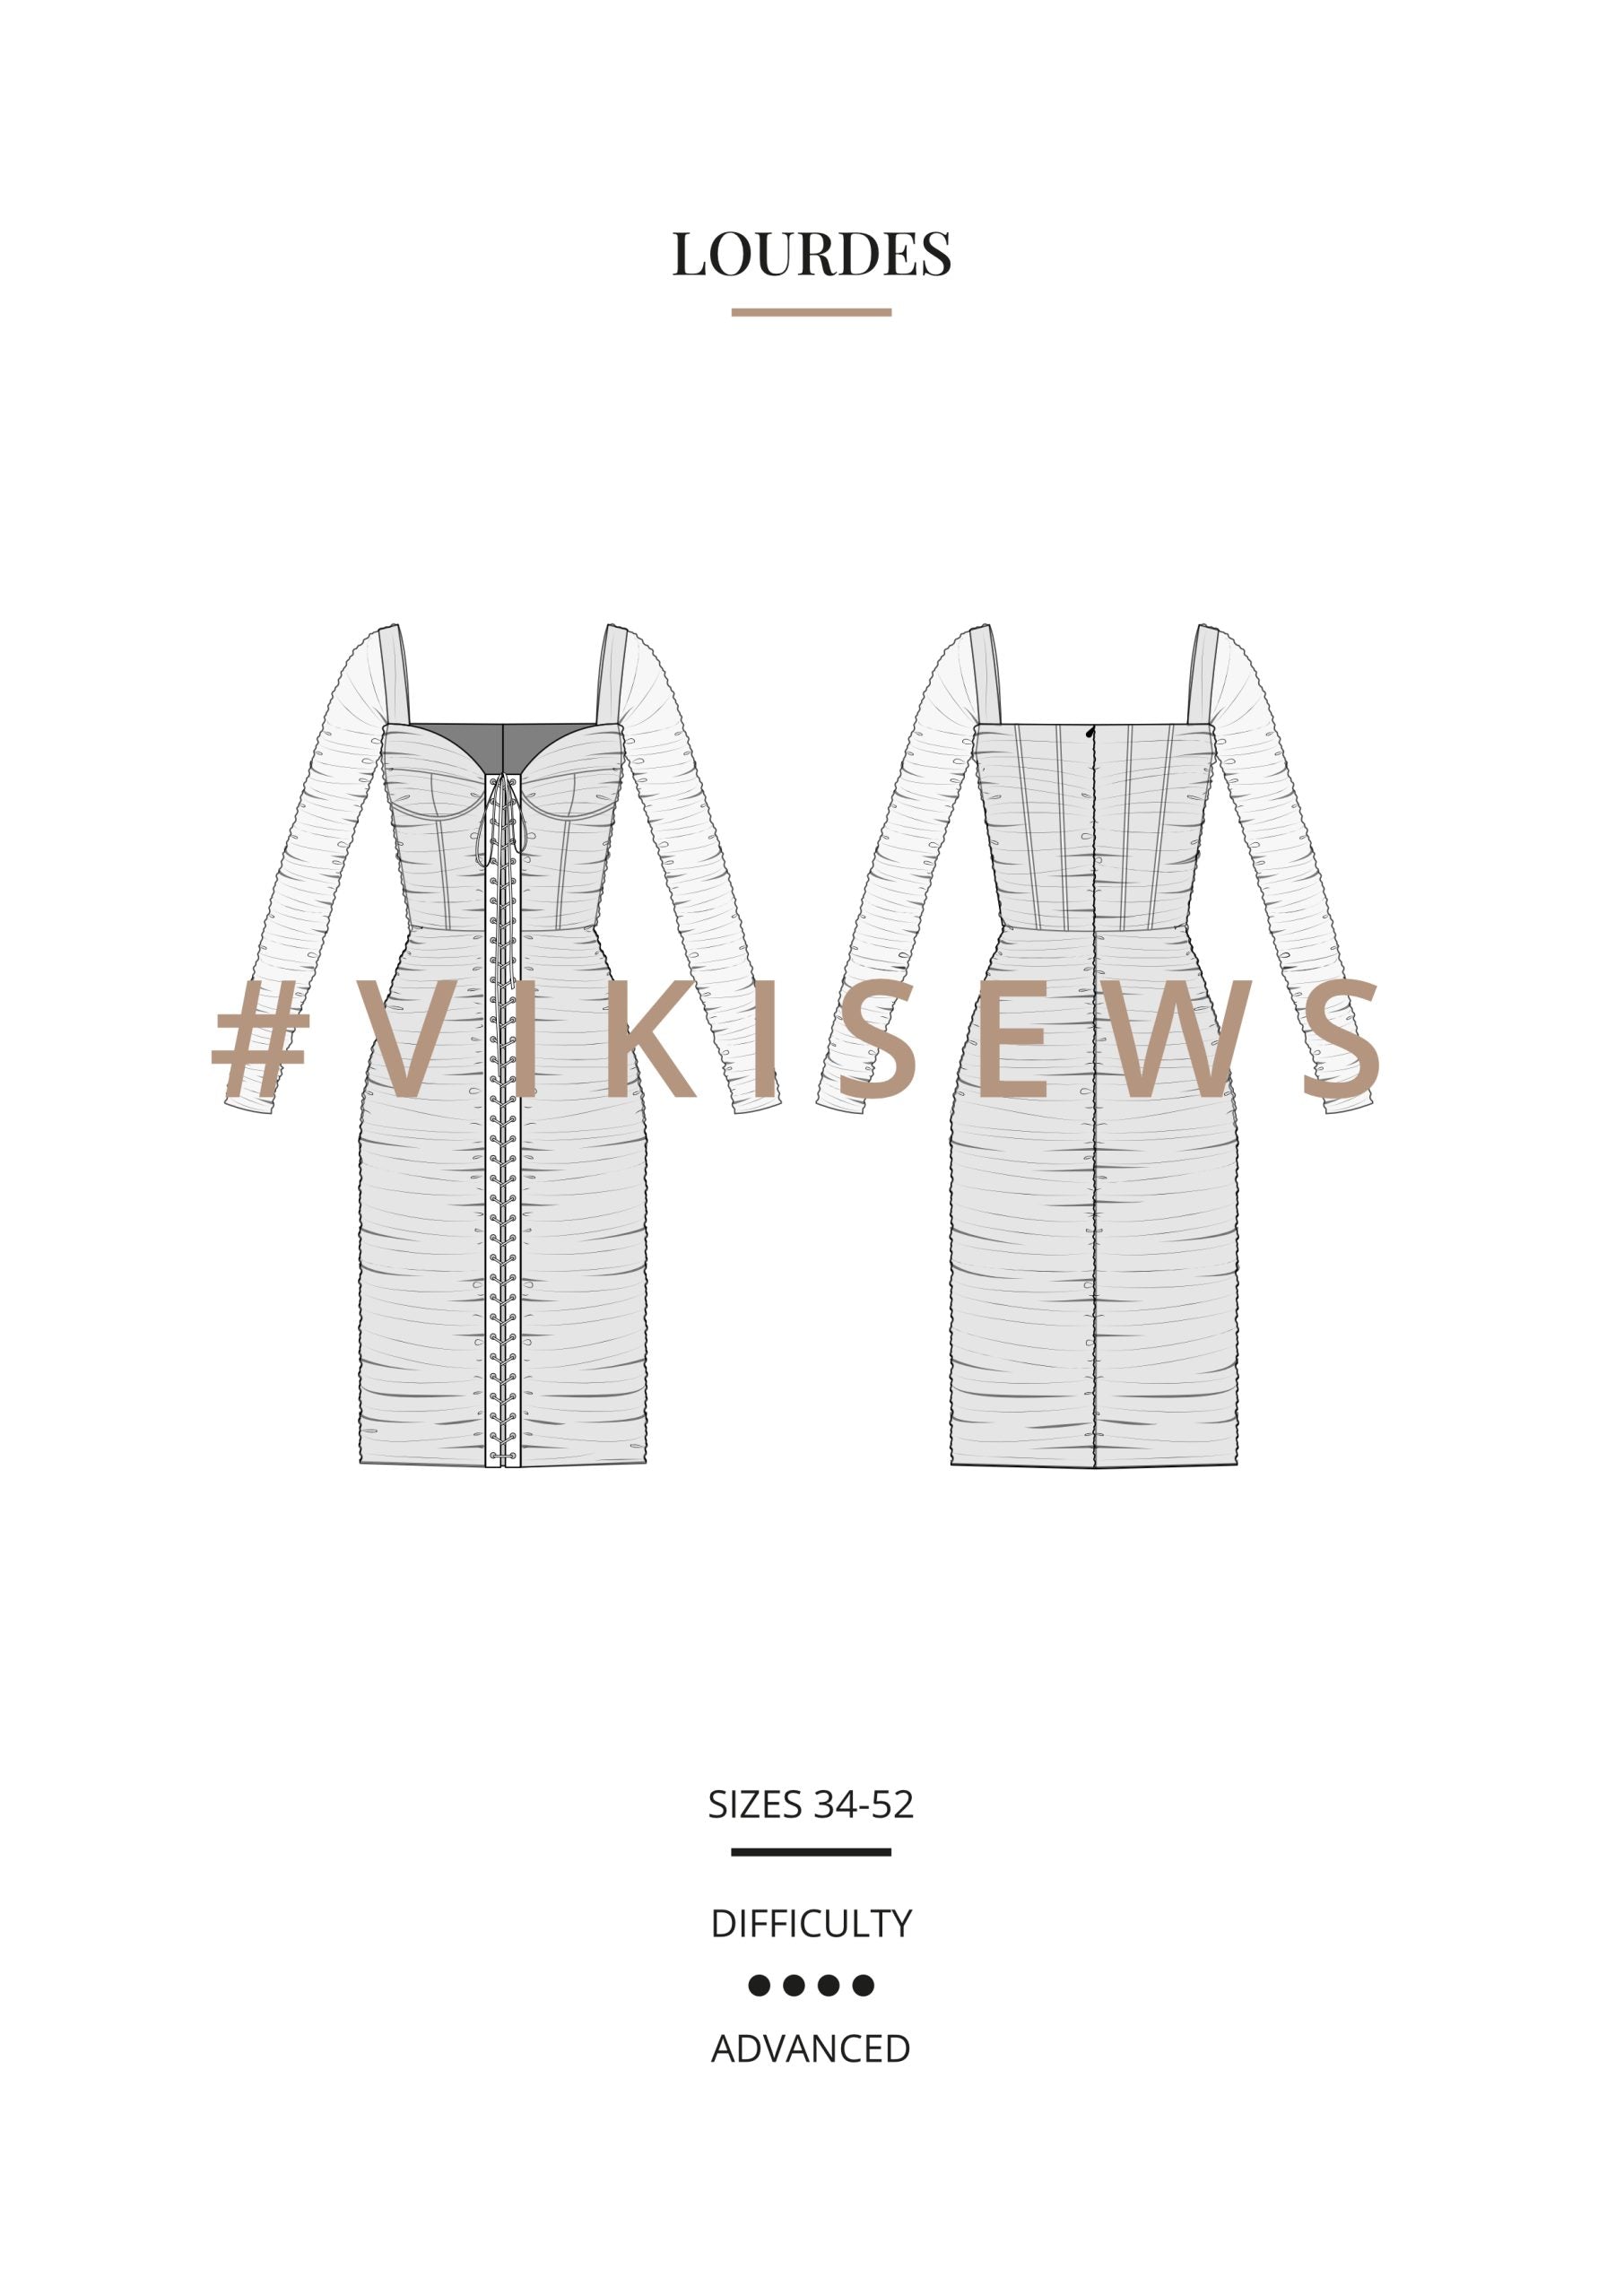 Vikisews Lourdes Dress PDF